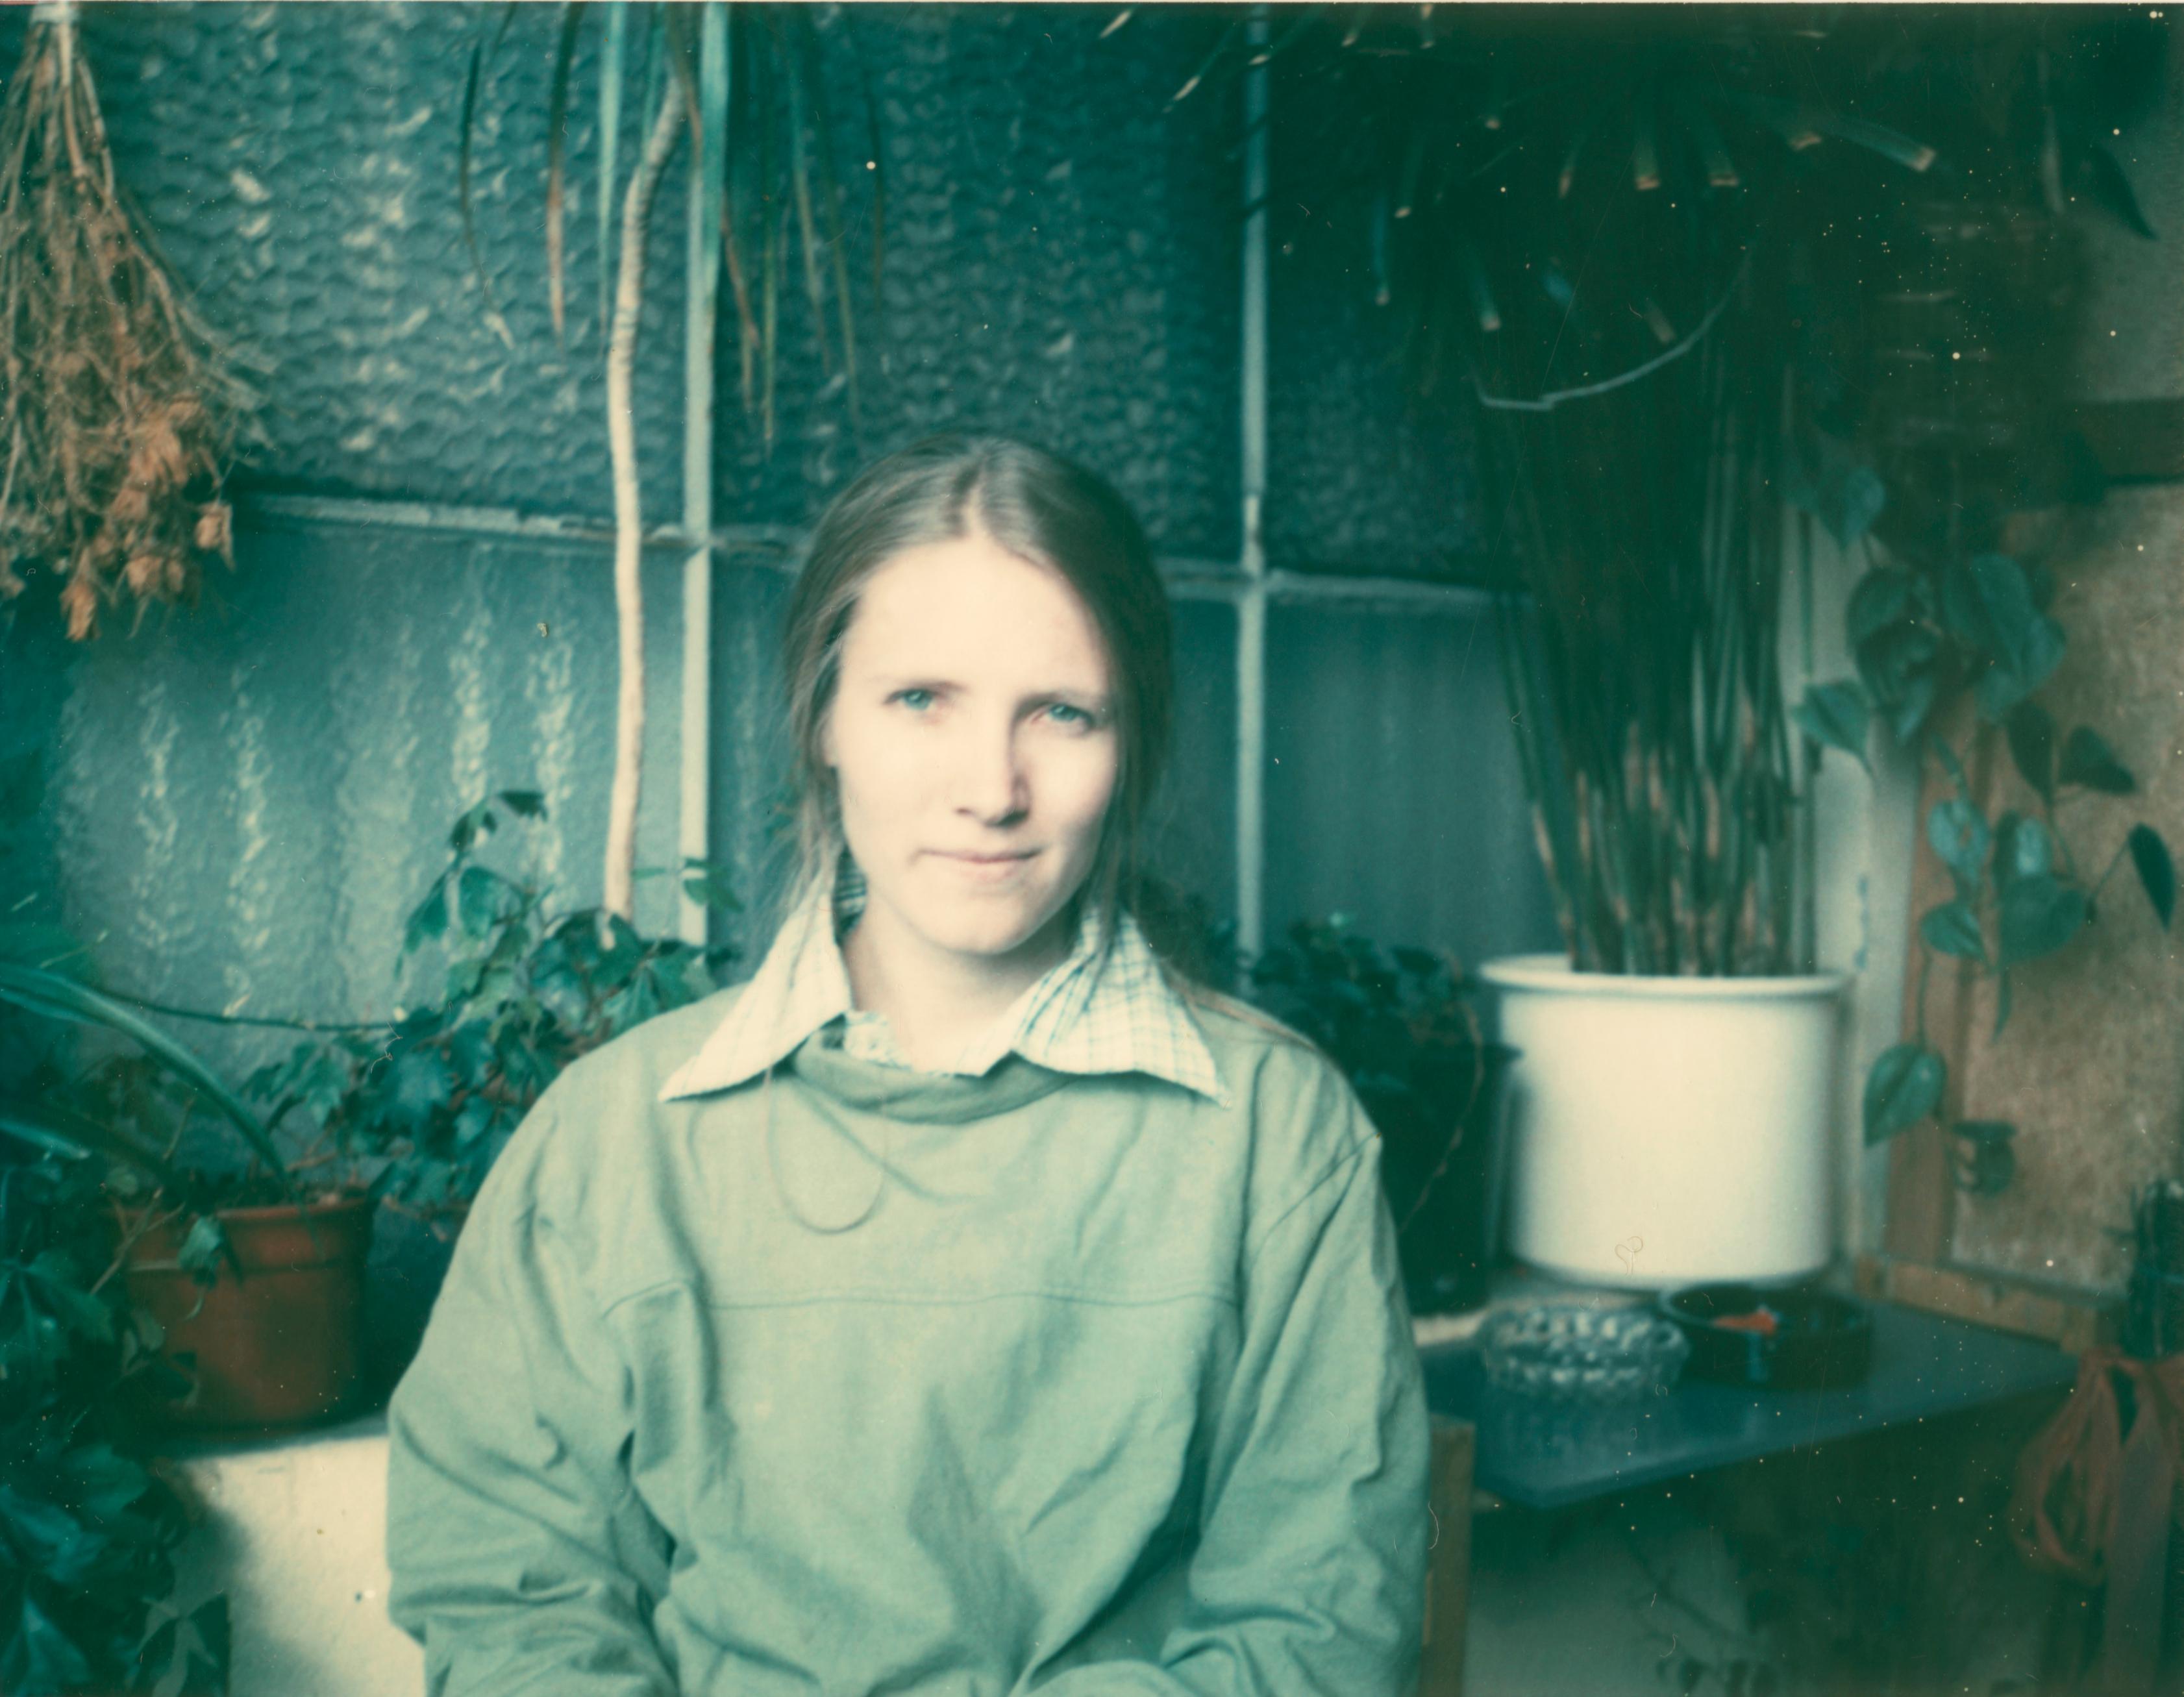 Self Portrait in Green, 1993 - Photograph by Stefanie Schneider